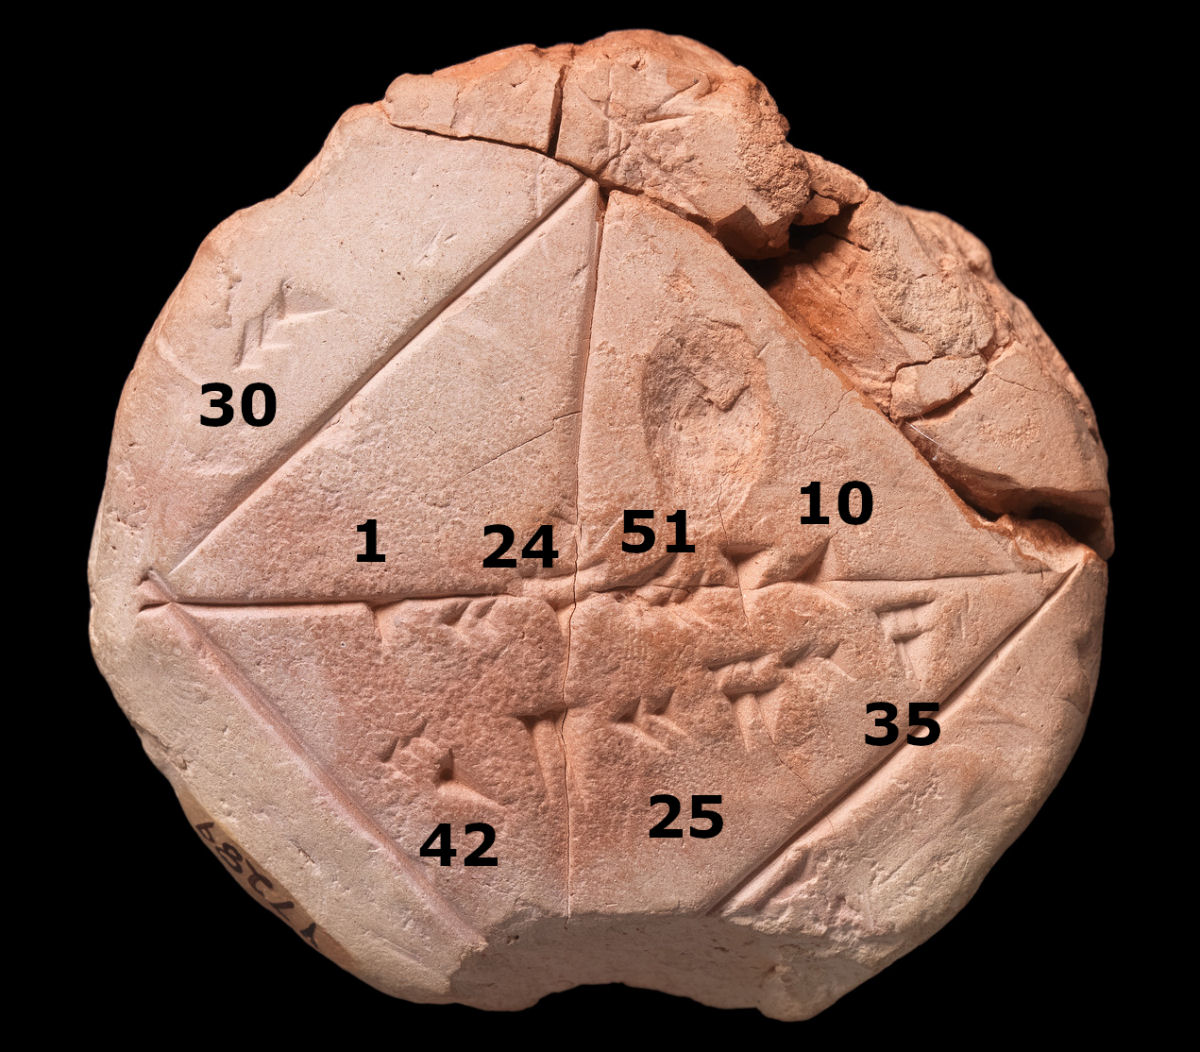 Antiga tabuinha da Babilônia usa o teorema de Pitágoras 1.000 anos antes do nascimento de Pitágoras